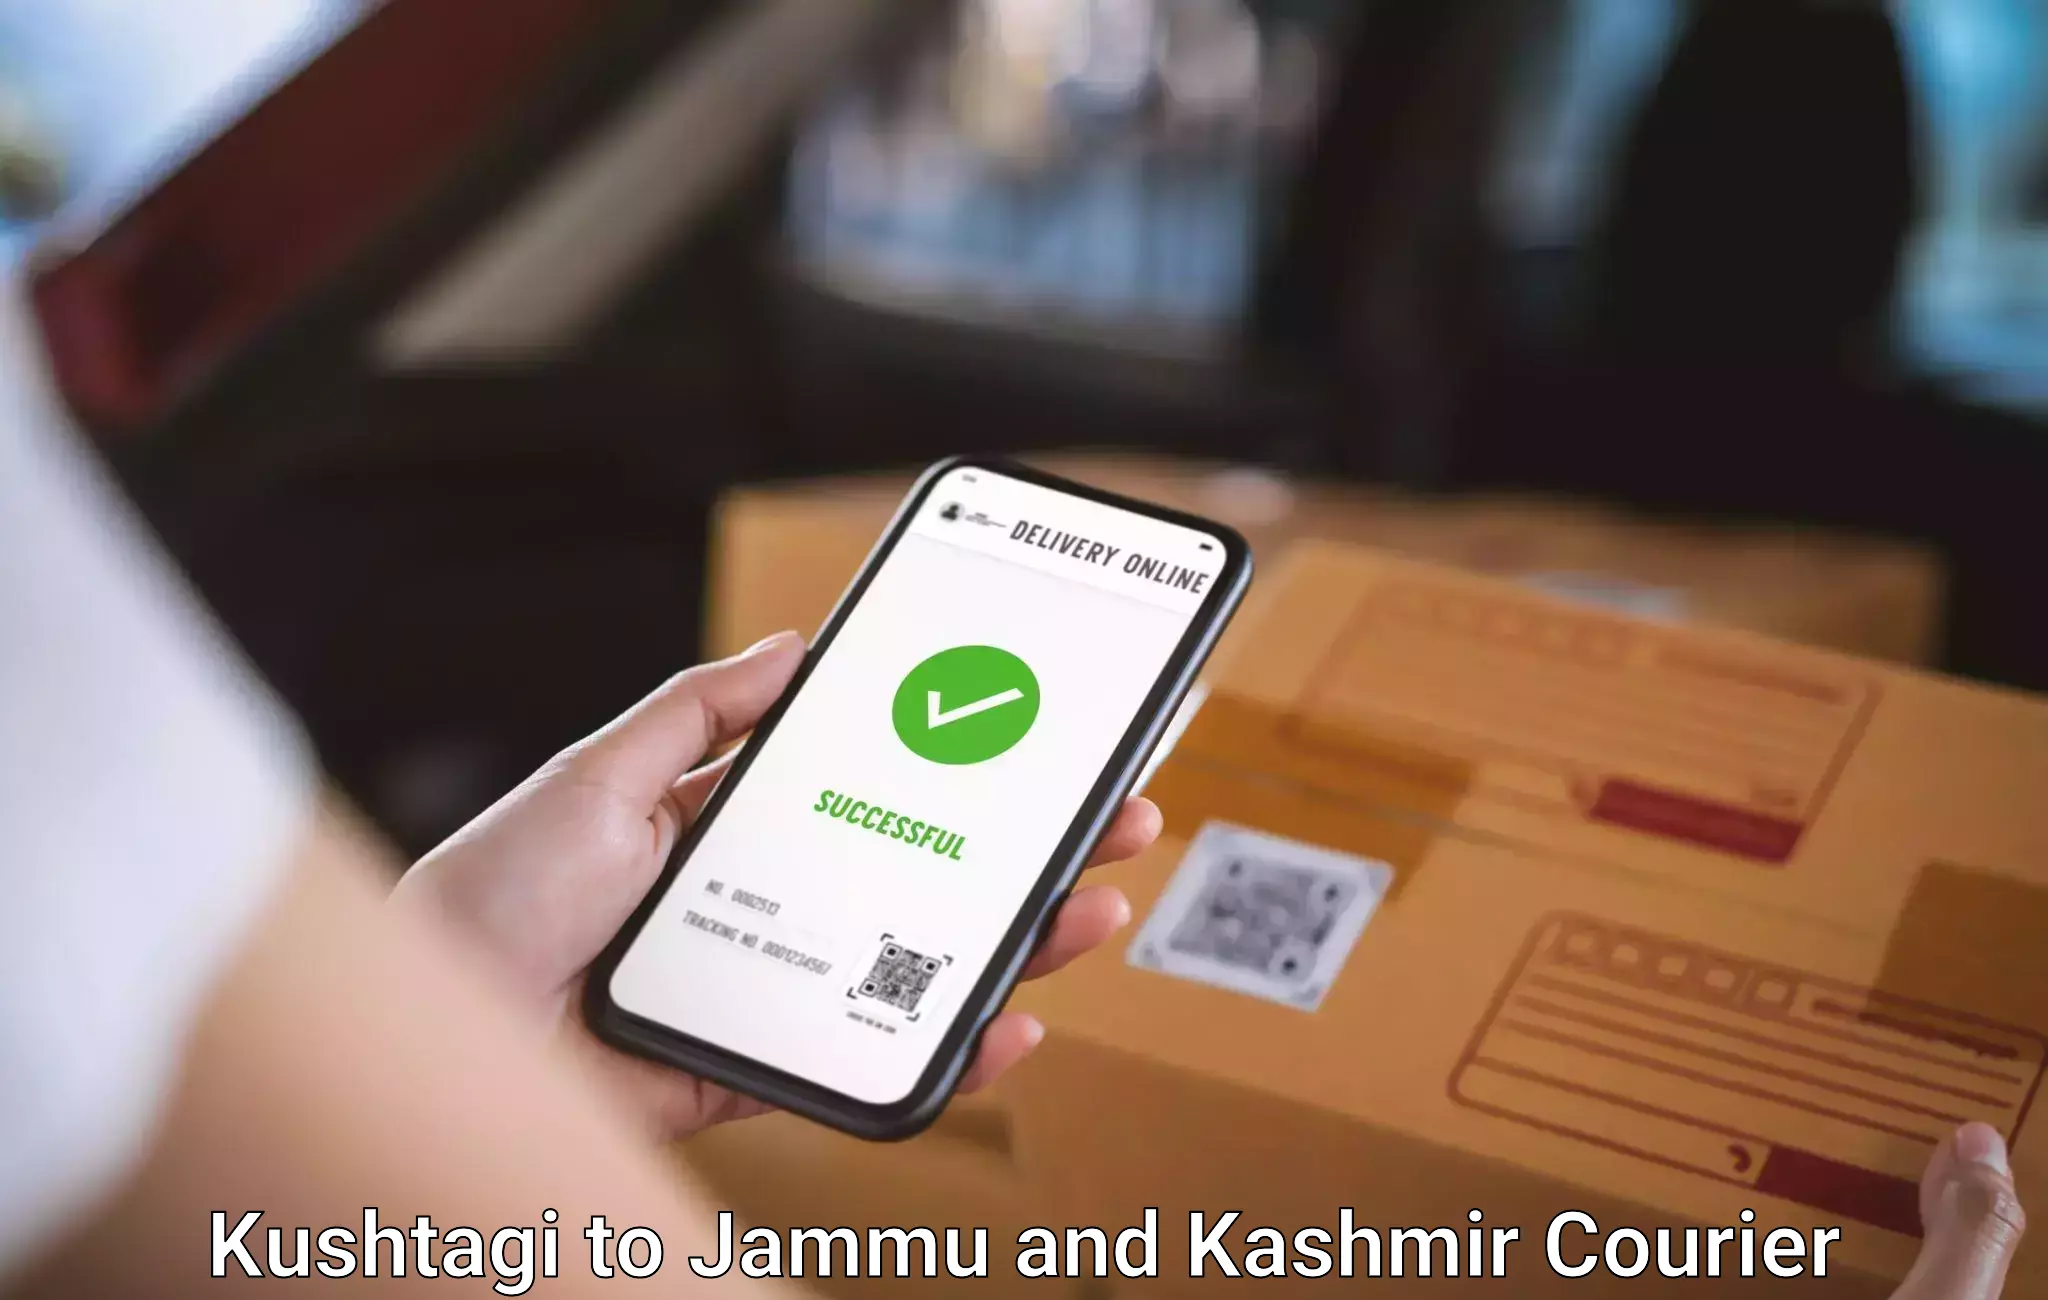 Luggage transport solutions Kushtagi to Jammu and Kashmir